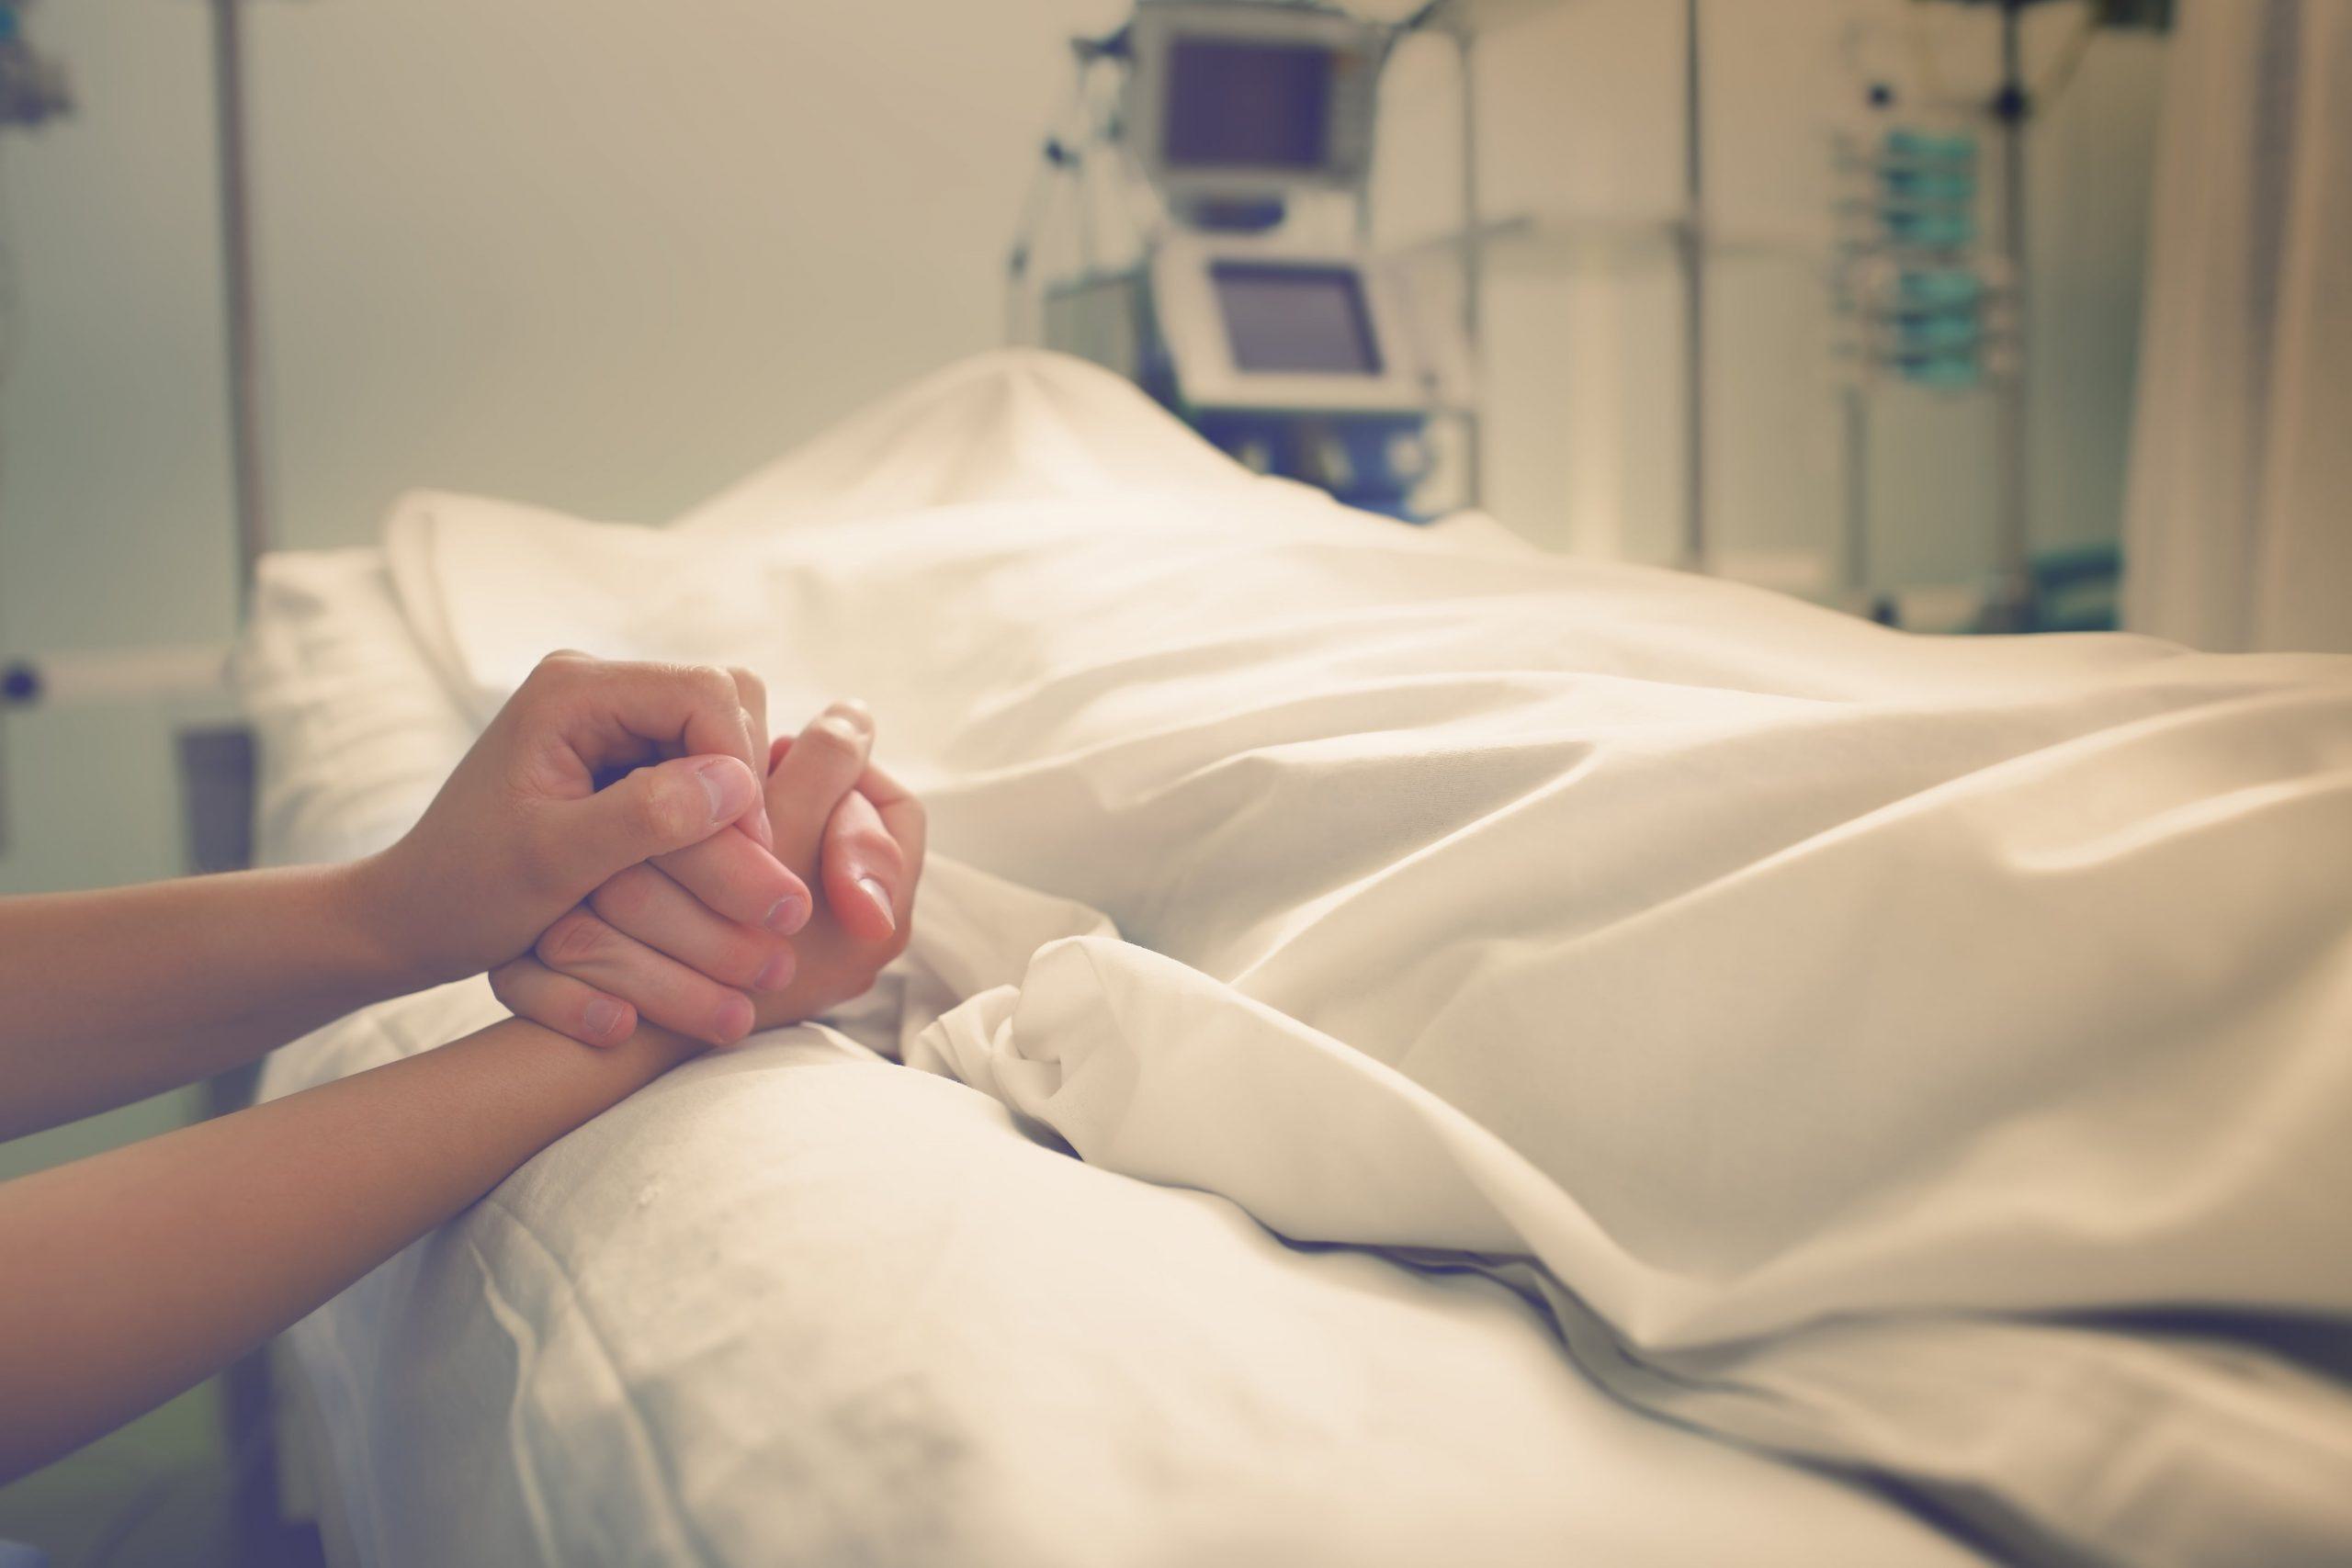 Orgaandonatie: pas na ‘hersendood’ en uitnemen organen treedt de echte dood in